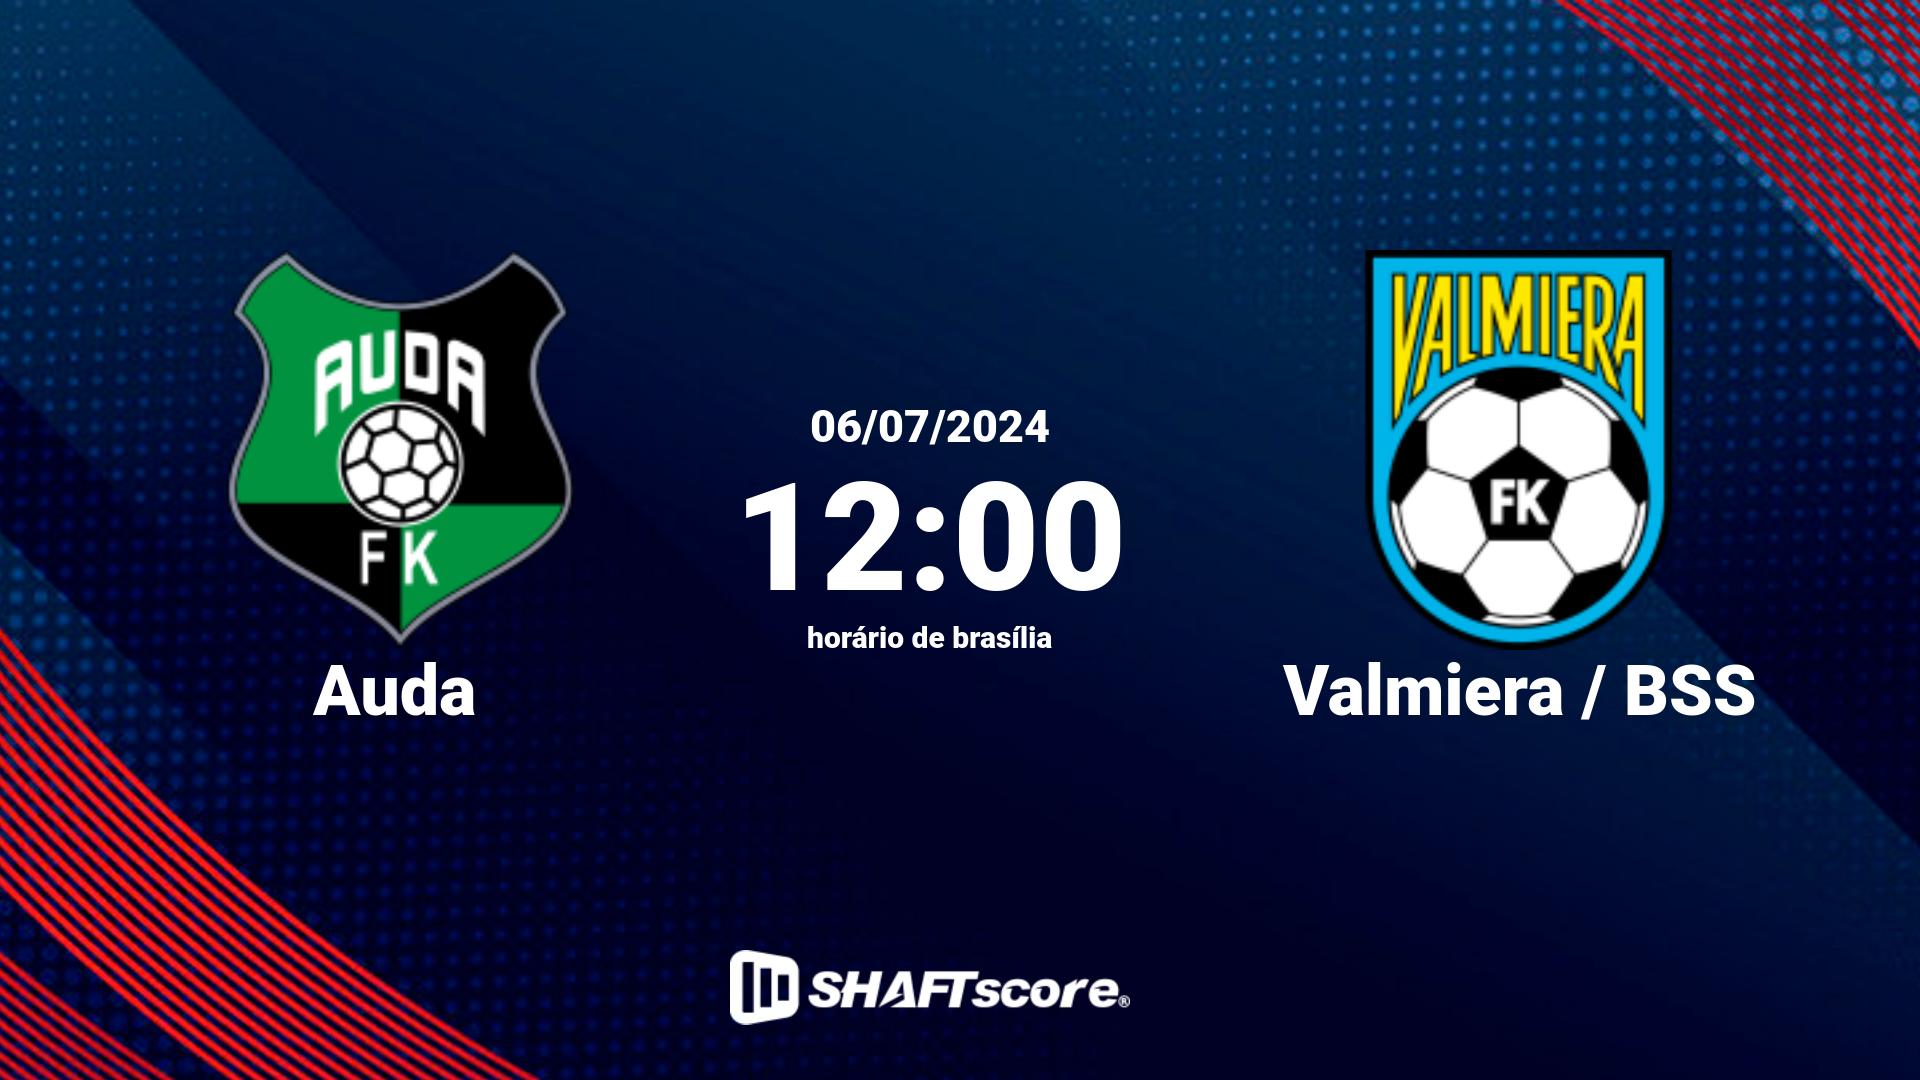 Estatísticas do jogo Auda vs Valmiera / BSS 06.07 12:00